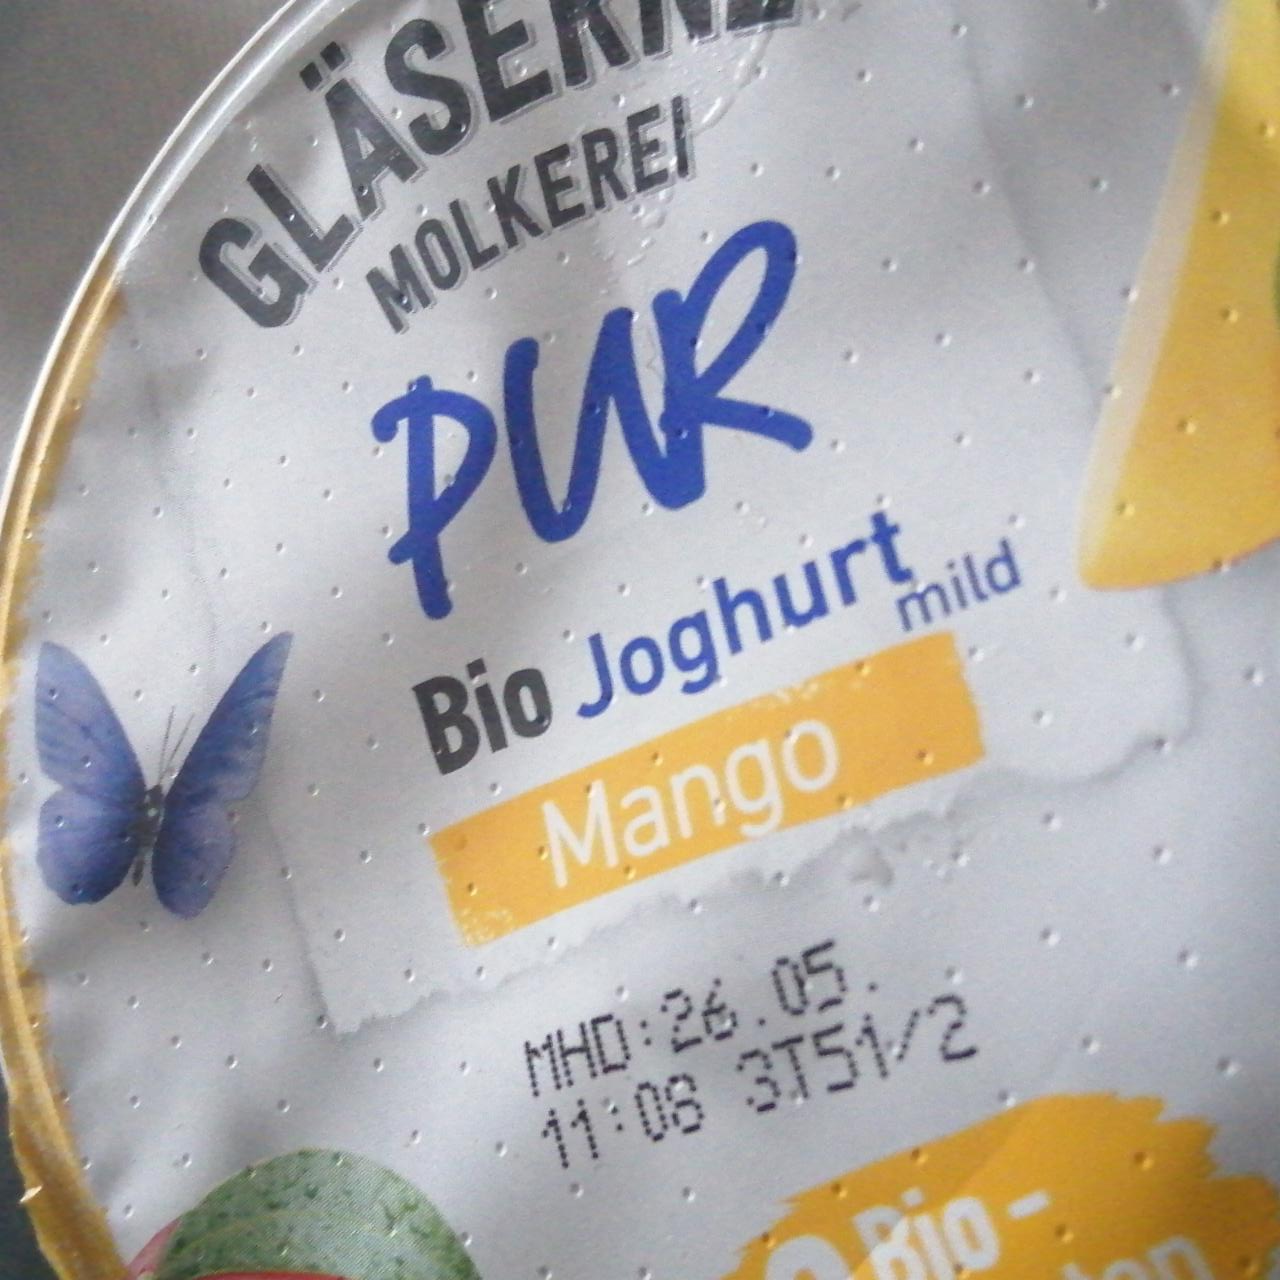 Fotografie - Pur bio joghurt mild mango Gläserne Molkerei